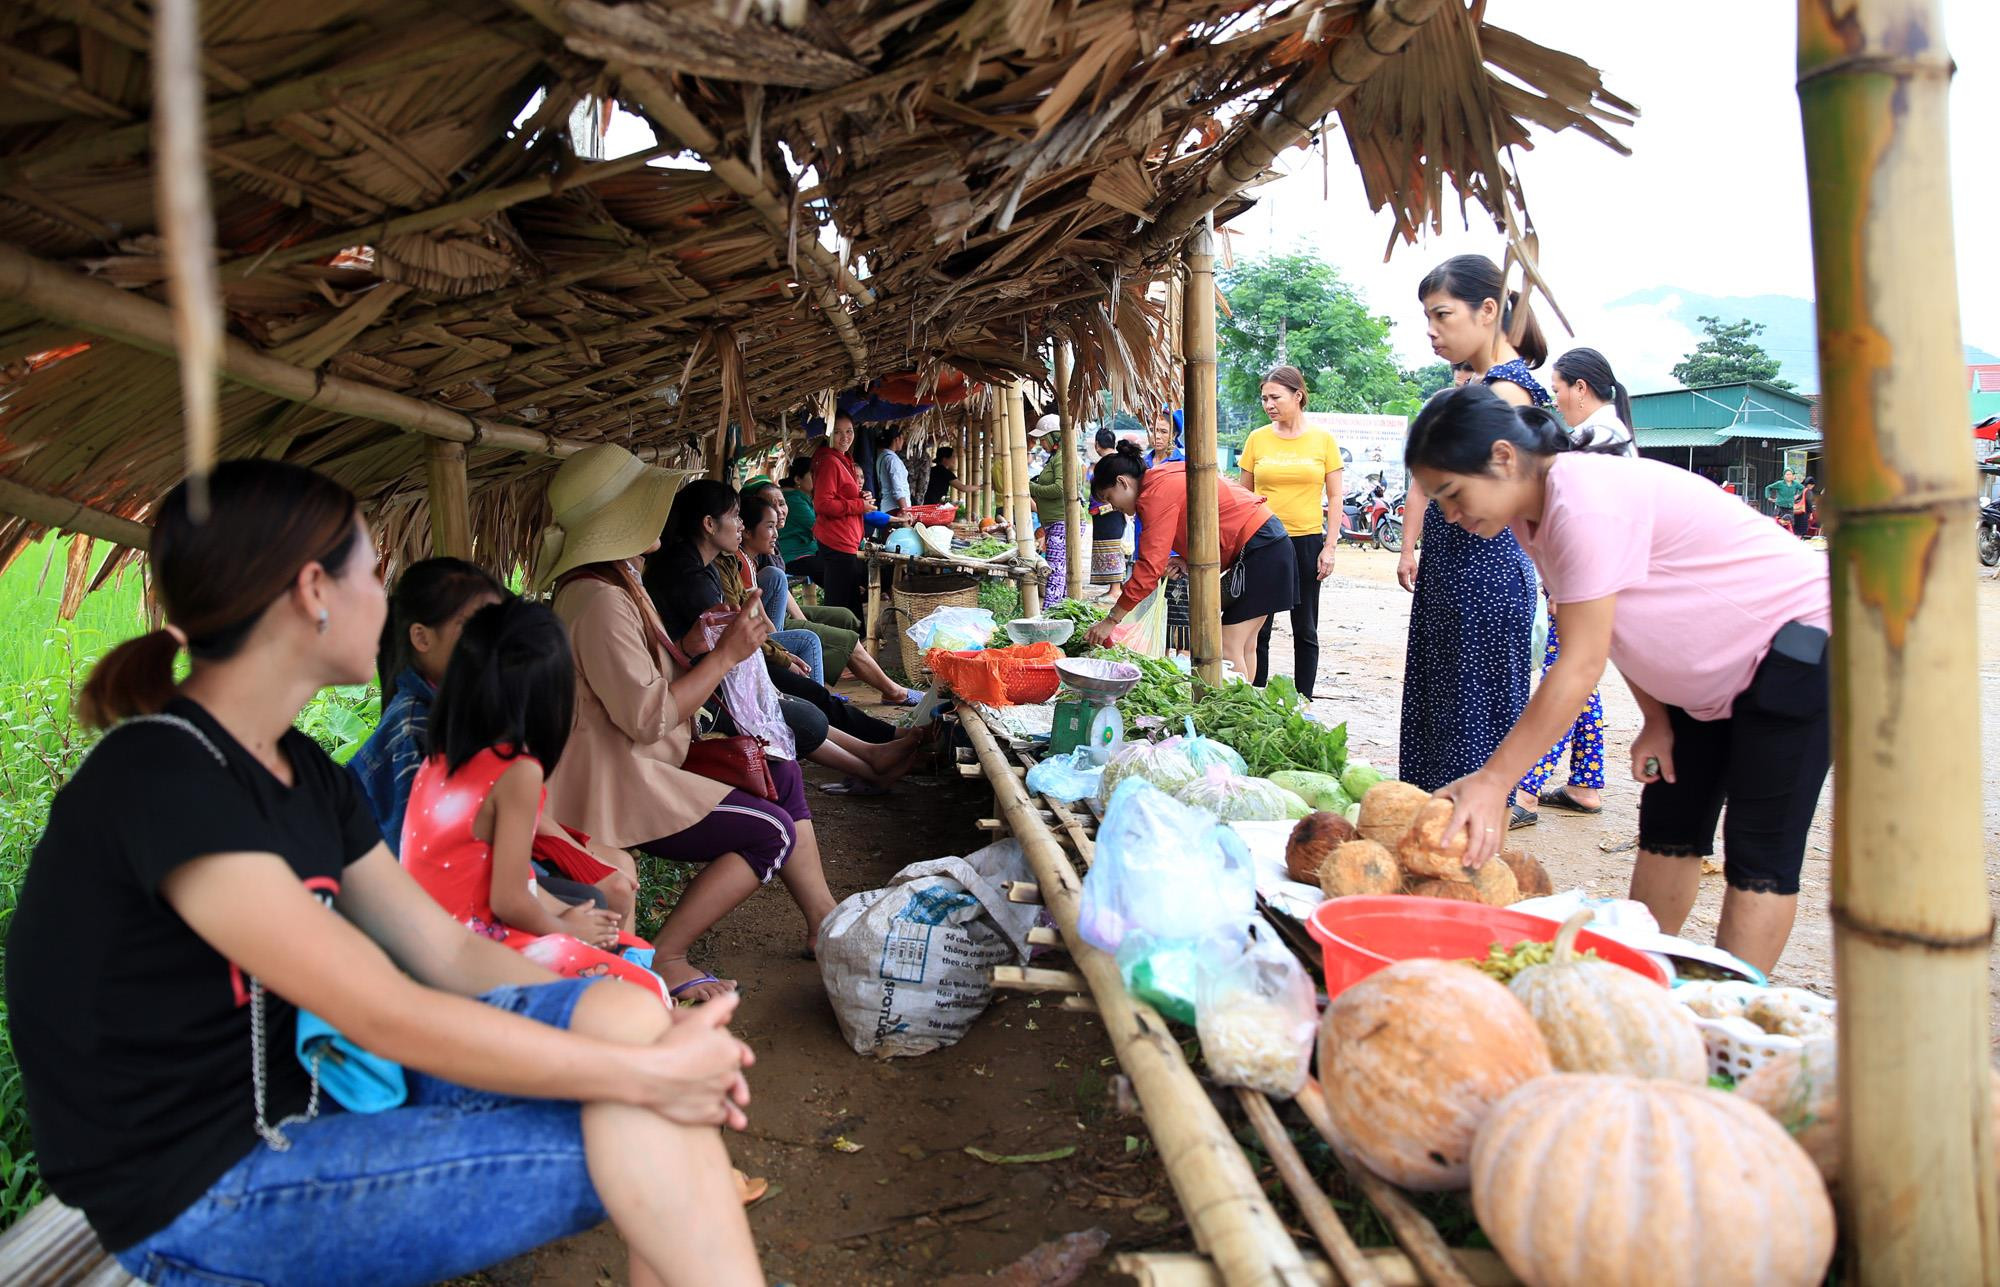 Khu chợ ở trung tâm xã Tri Lễ cách trung tâm huyện Quế Phong 30km. Nơi đây có những sạp hàng dựng bằng tre nứa tạm bợ và chu yếu phục vụ nhu cầu các xóm bạn lân caanhj trung tâm xã.